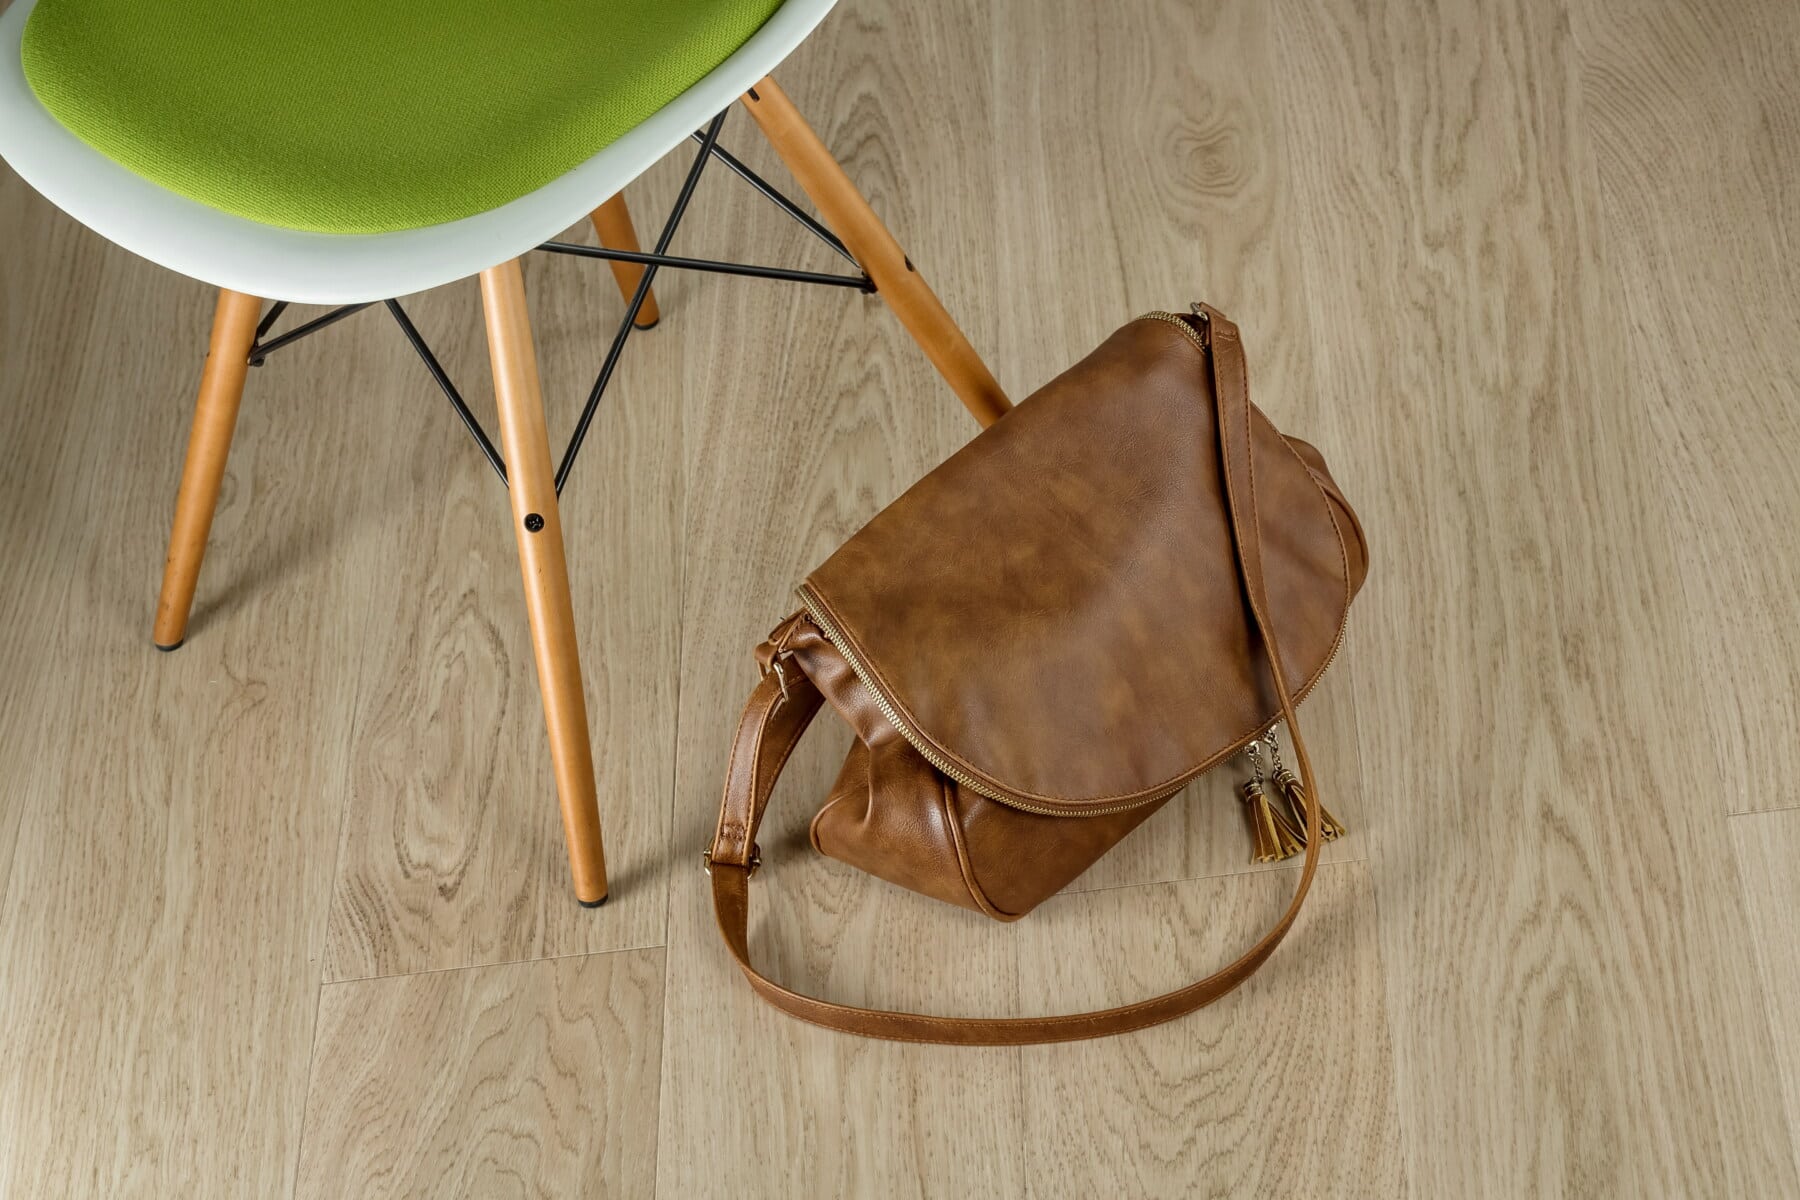 sac à main, bagages, en cuir, brun, brun clair, siège, bois, chaise, Retro, en bois